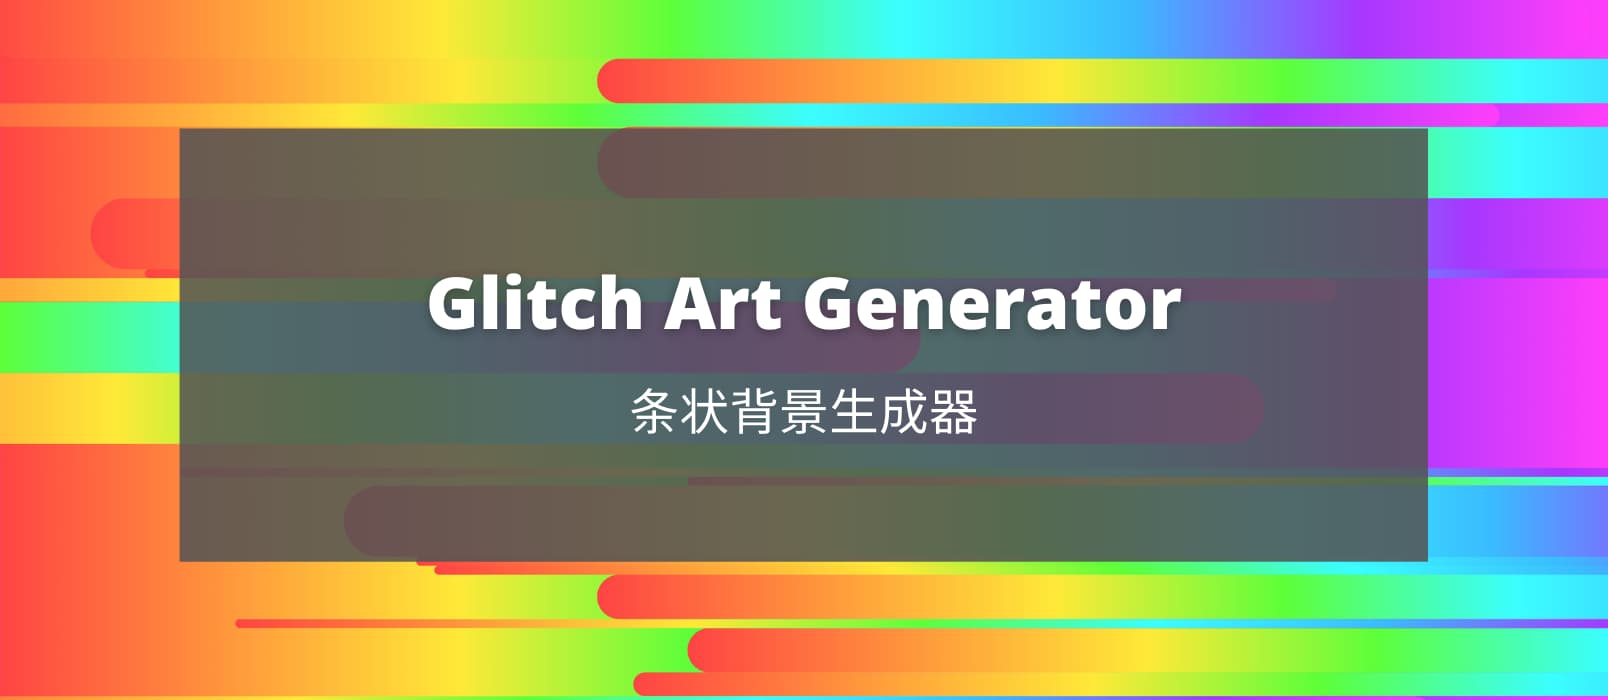 Glitch Art Generator - 漂亮的条状背景图片生成器